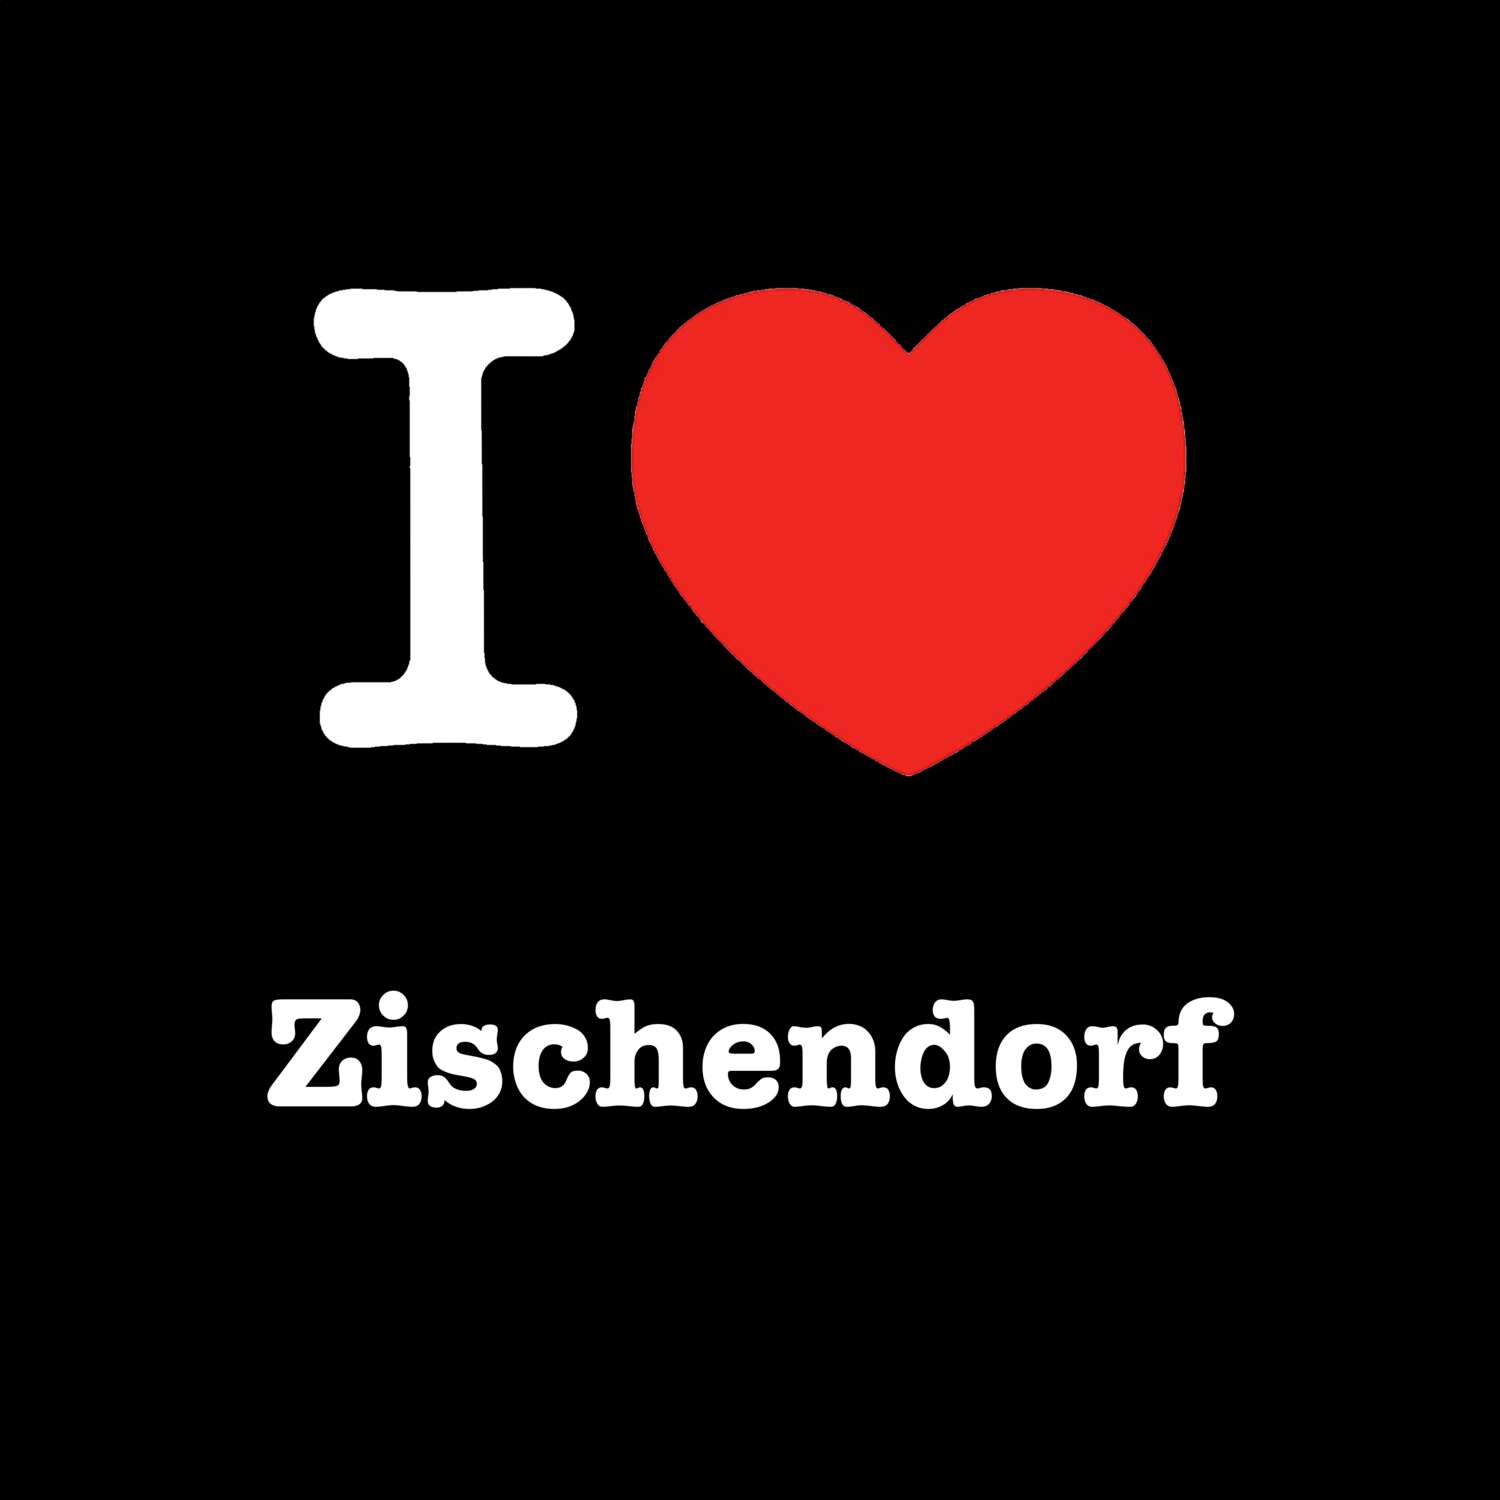 Zischendorf T-Shirt »I love«